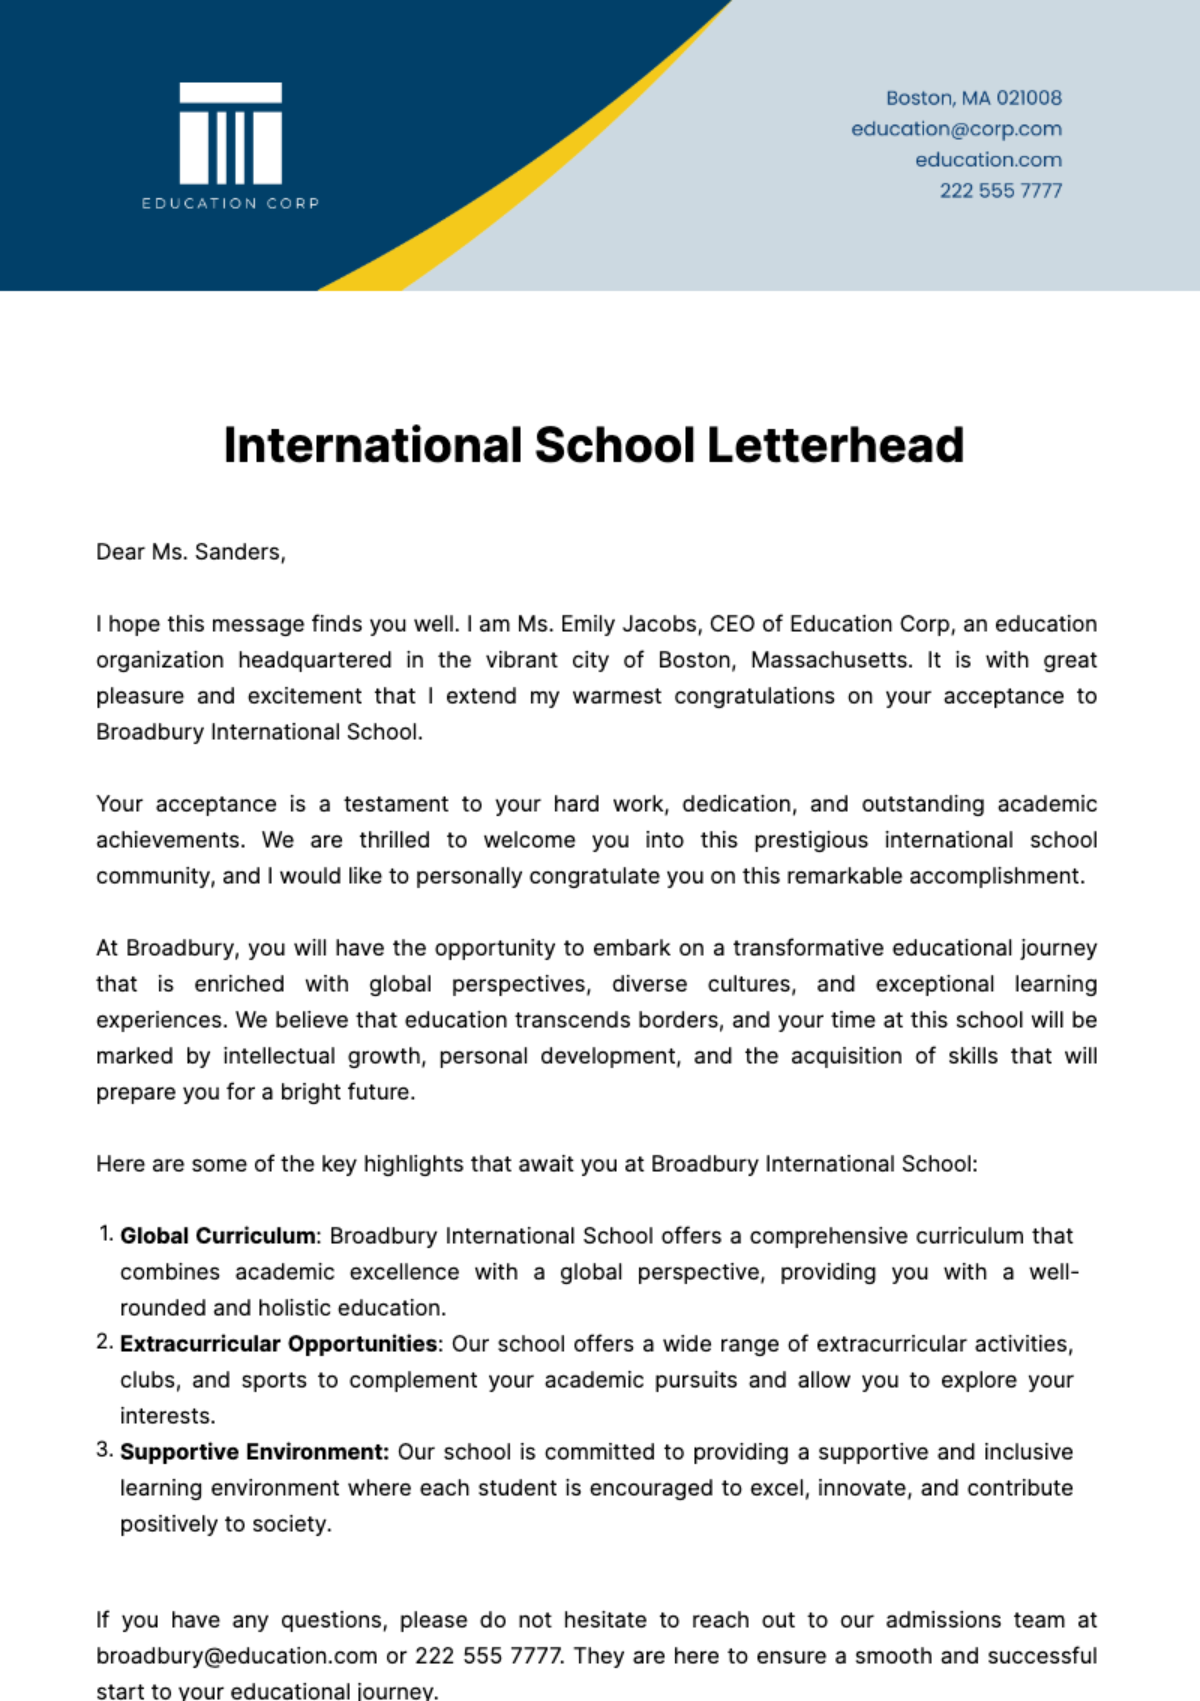 International School Letterhead Template